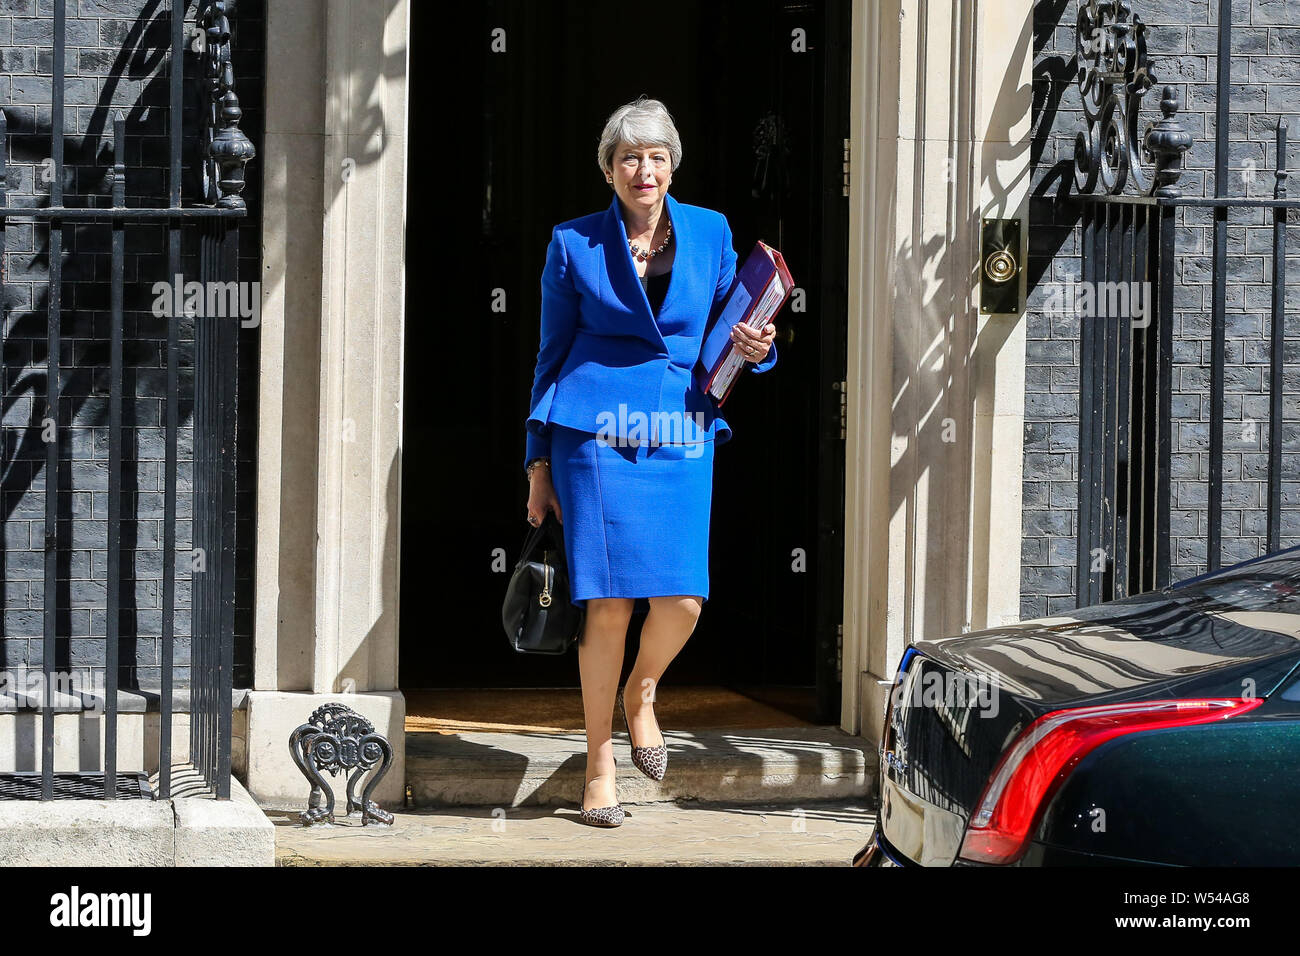 Der Premierminister von Großbritannien, Theresa May Blätter 10 Downing Street für das House of Commons Premierminister Fragen endgültig zu beantworten, bevor ihr Rücktritt der Königin in Westminster, London. Stockfoto